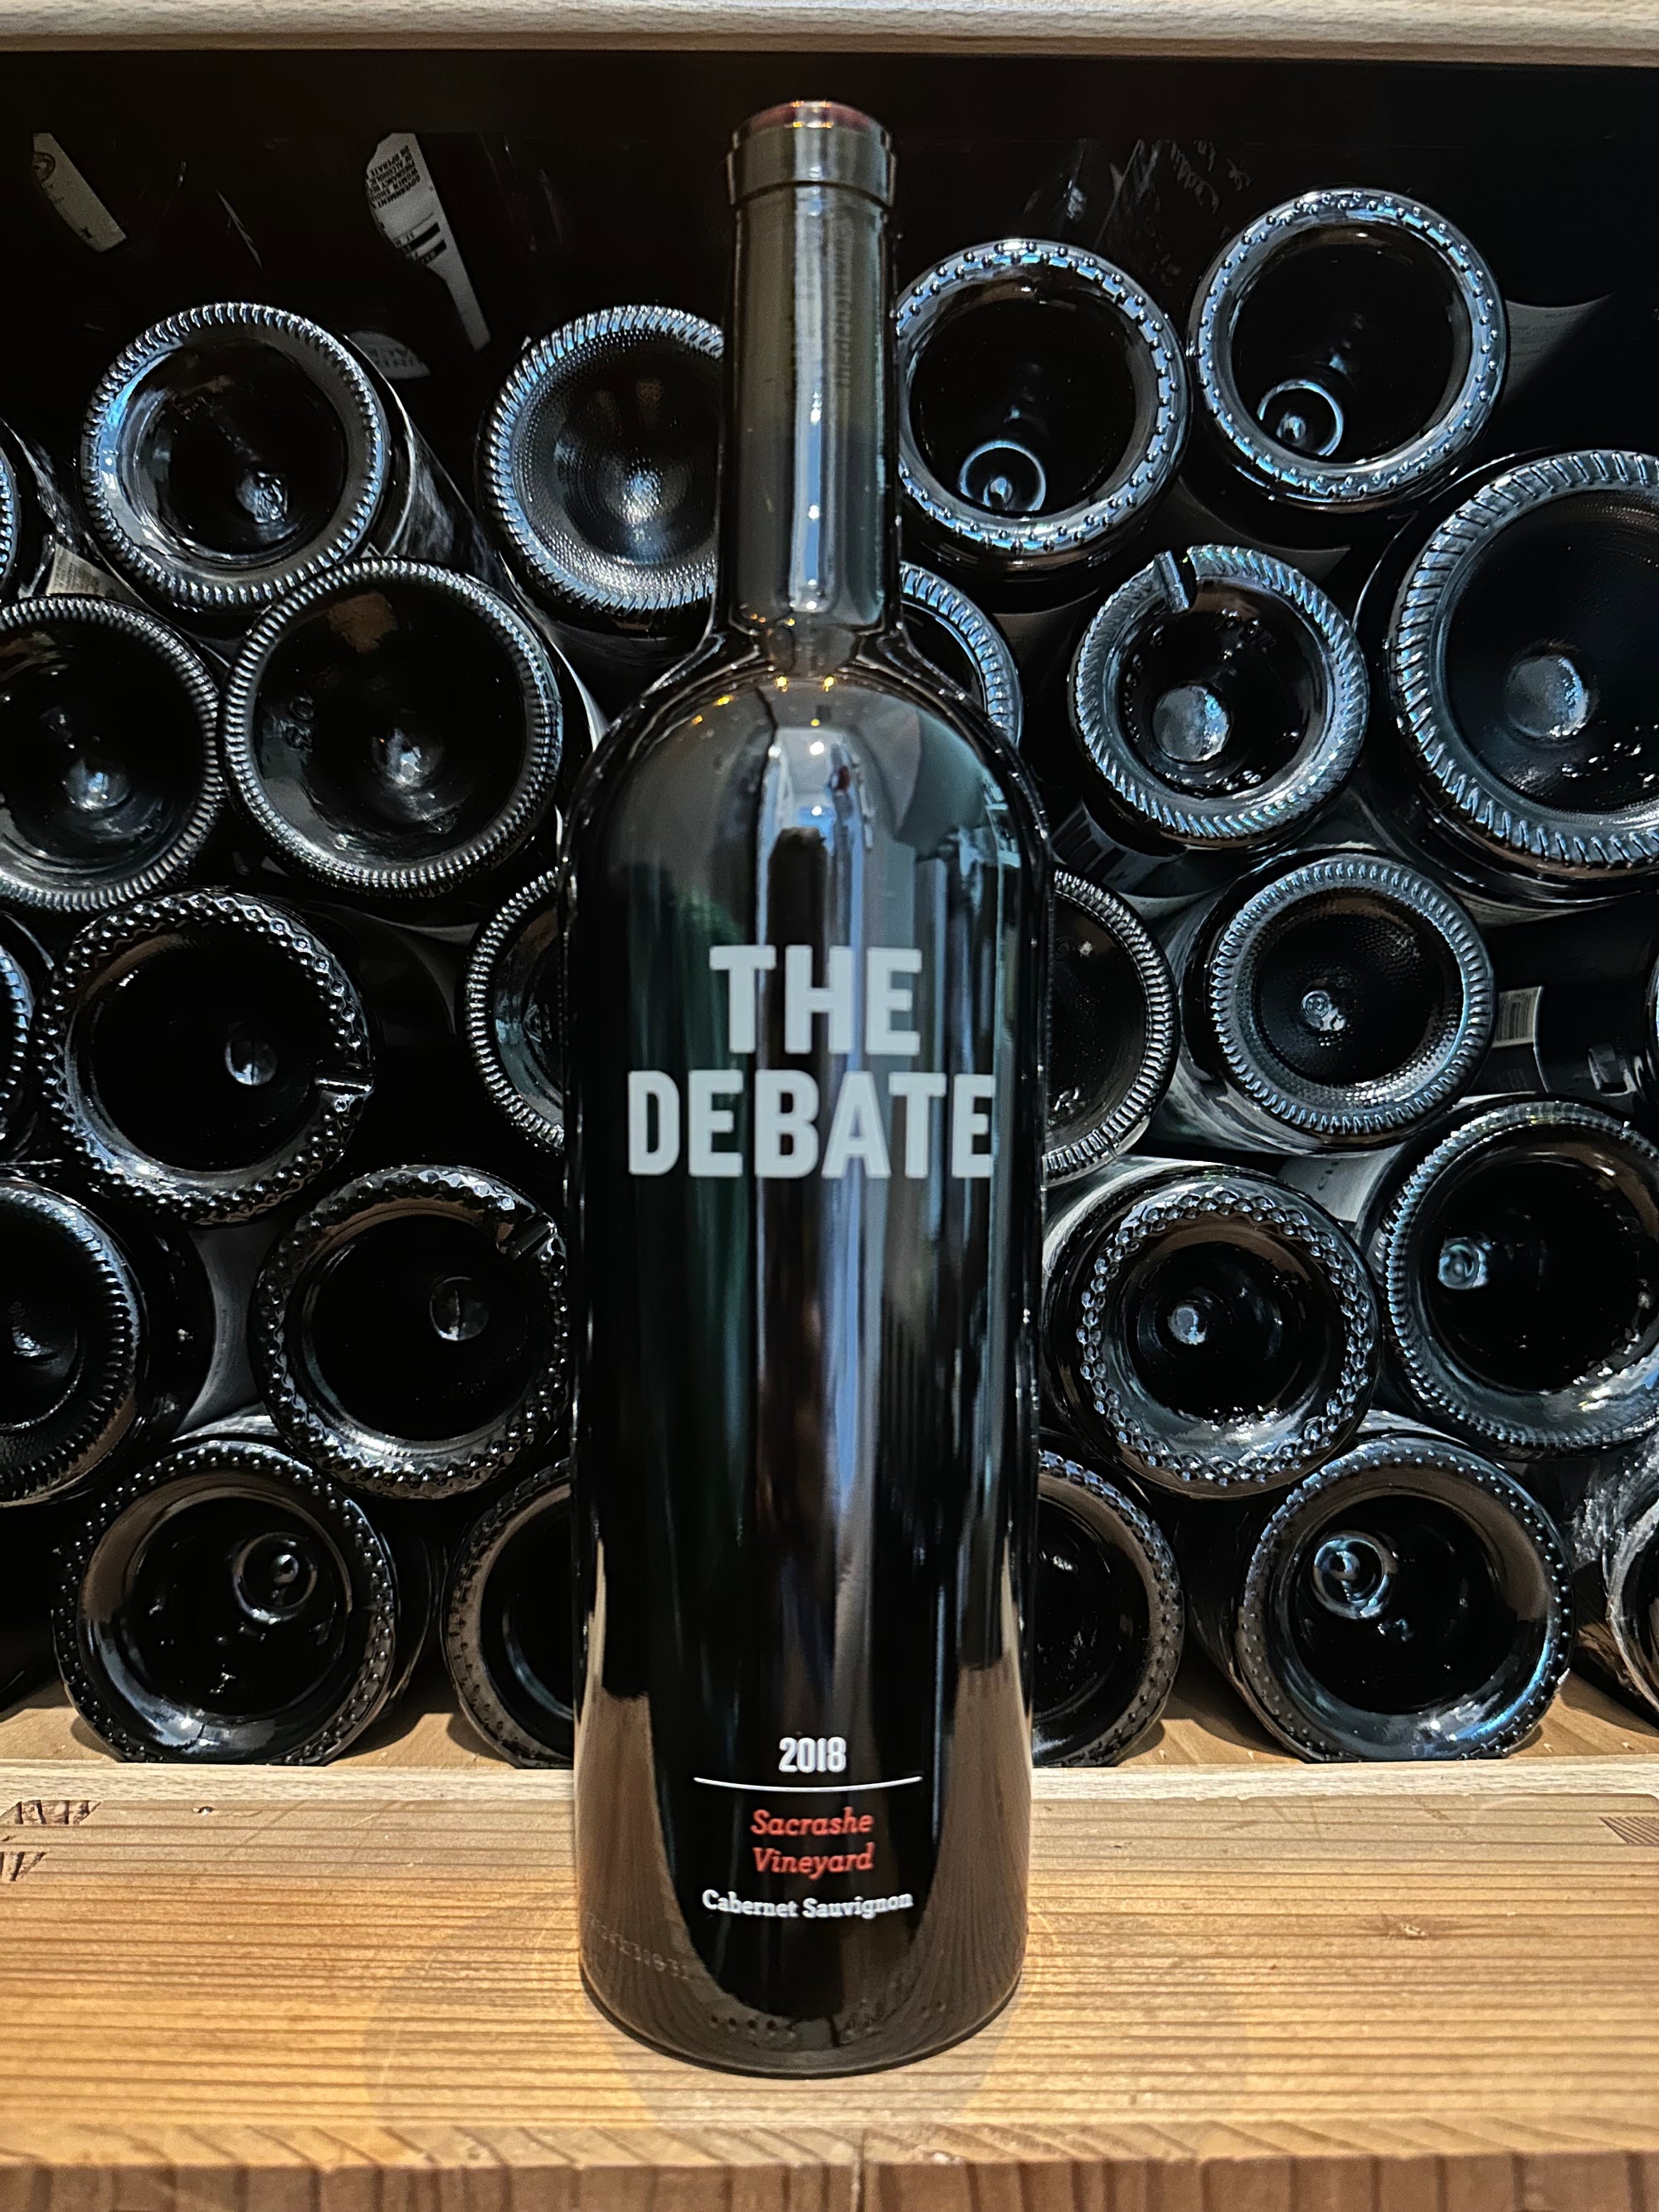 The Debate Sacrashe Vineyard Cabernet Sauvignon 2018